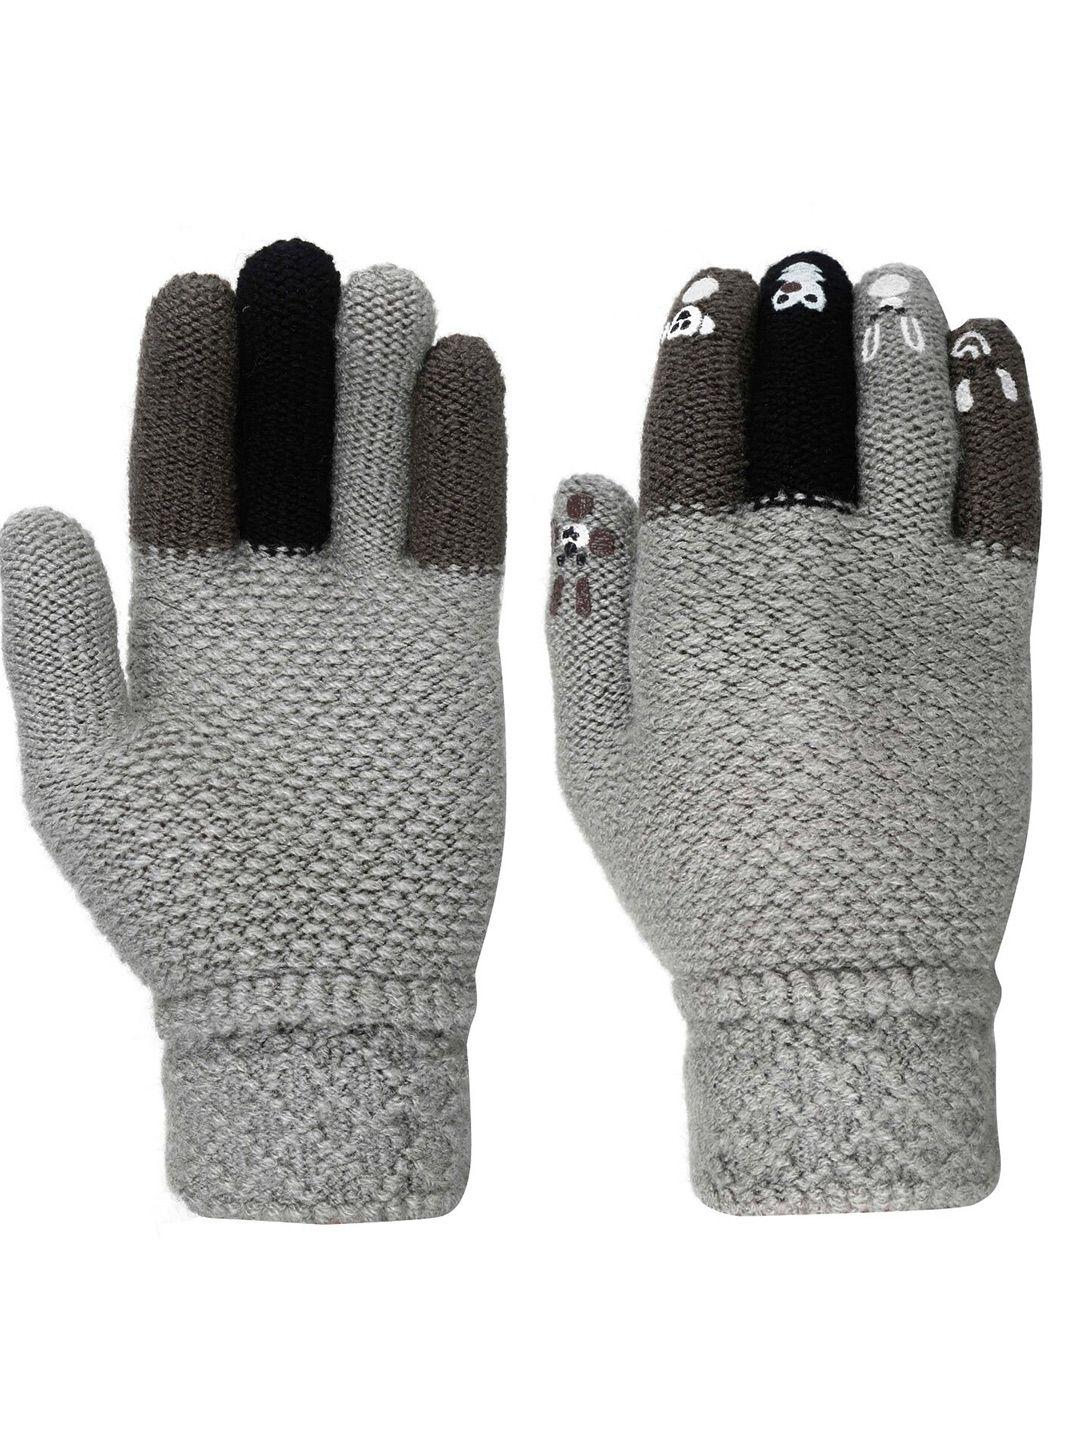 fabseasons kids patterned acrylic woolen winter gloves